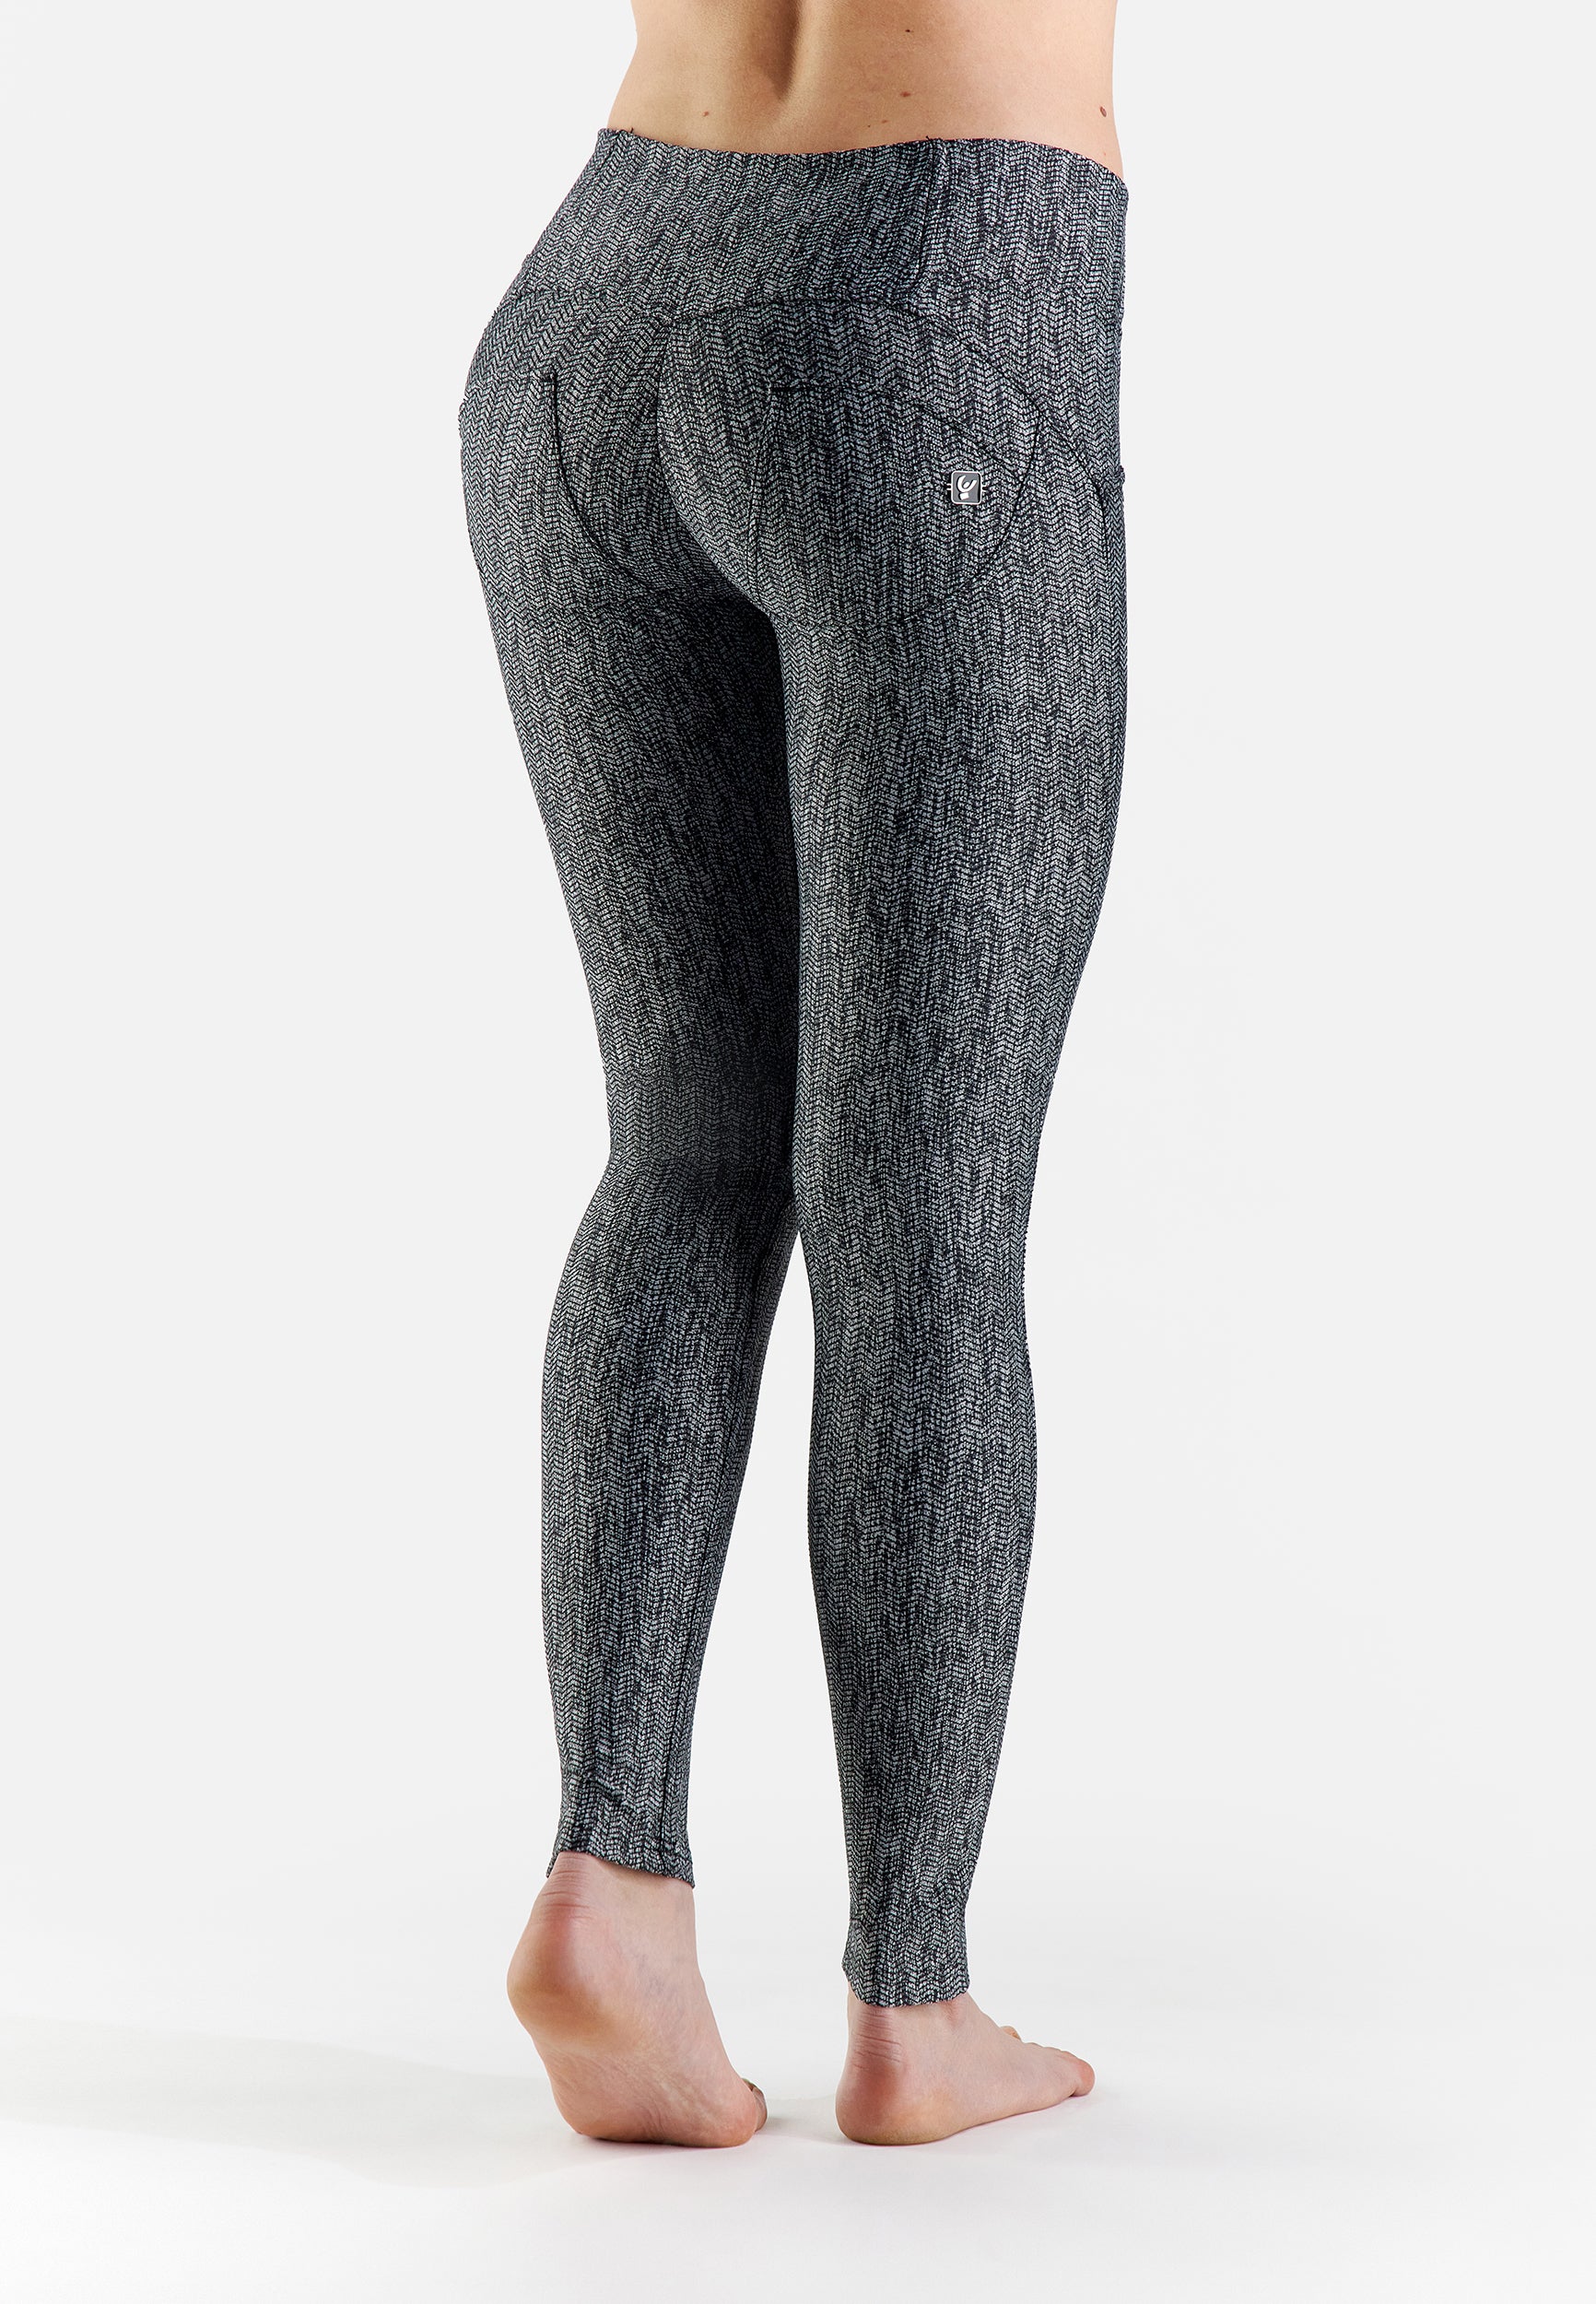 Ruitjes geruit zwart grey black grijs broek chique nette pantalon afslankend slim fit aansluitend wrup